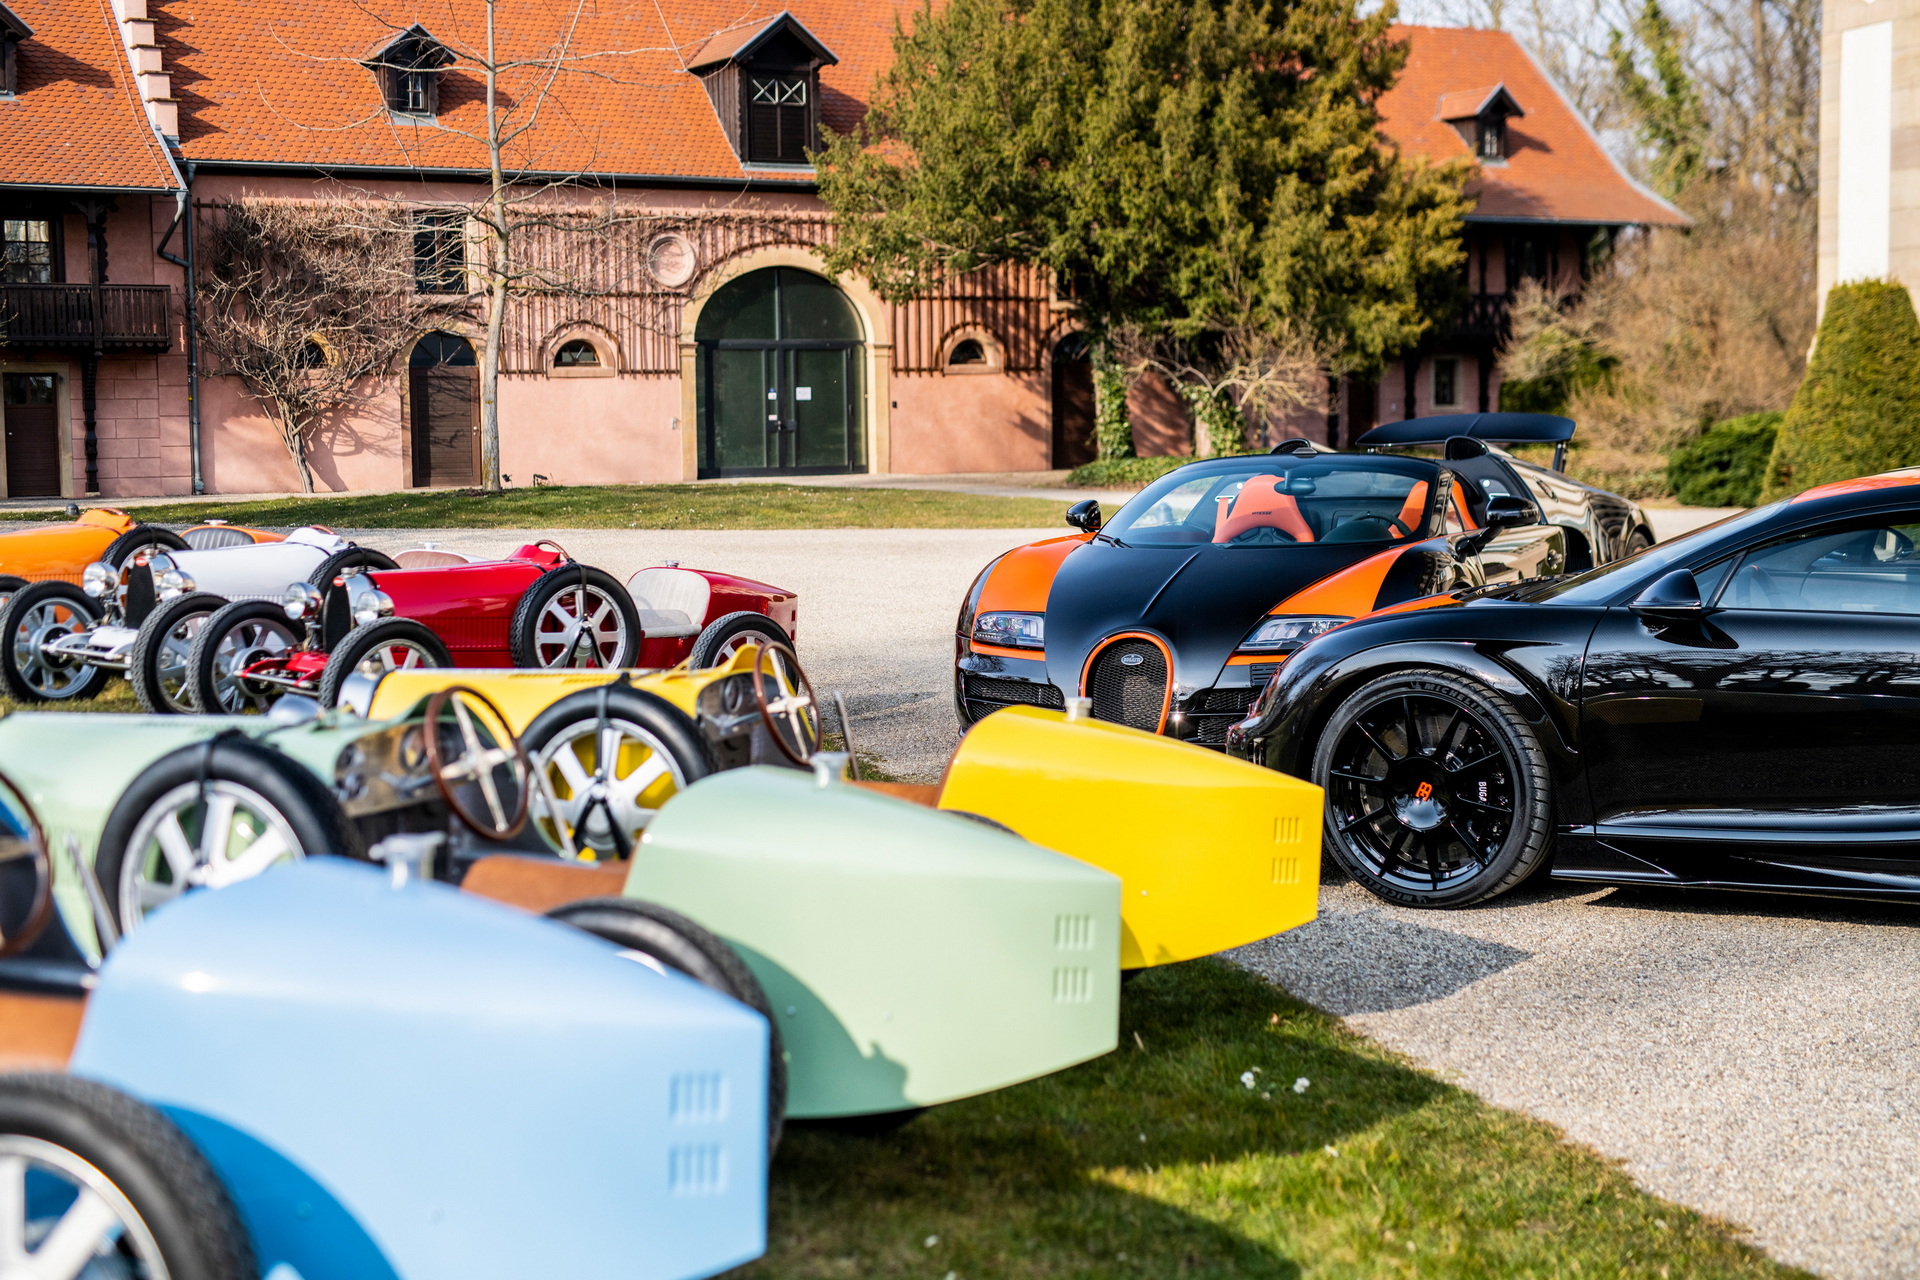 Ghé thăm nhà máy Bugatti, đại gia bí ẩn mua luôn 8 chiếc xe với giá quy đổi không dưới 150 tỷ đồng - Ảnh 1.